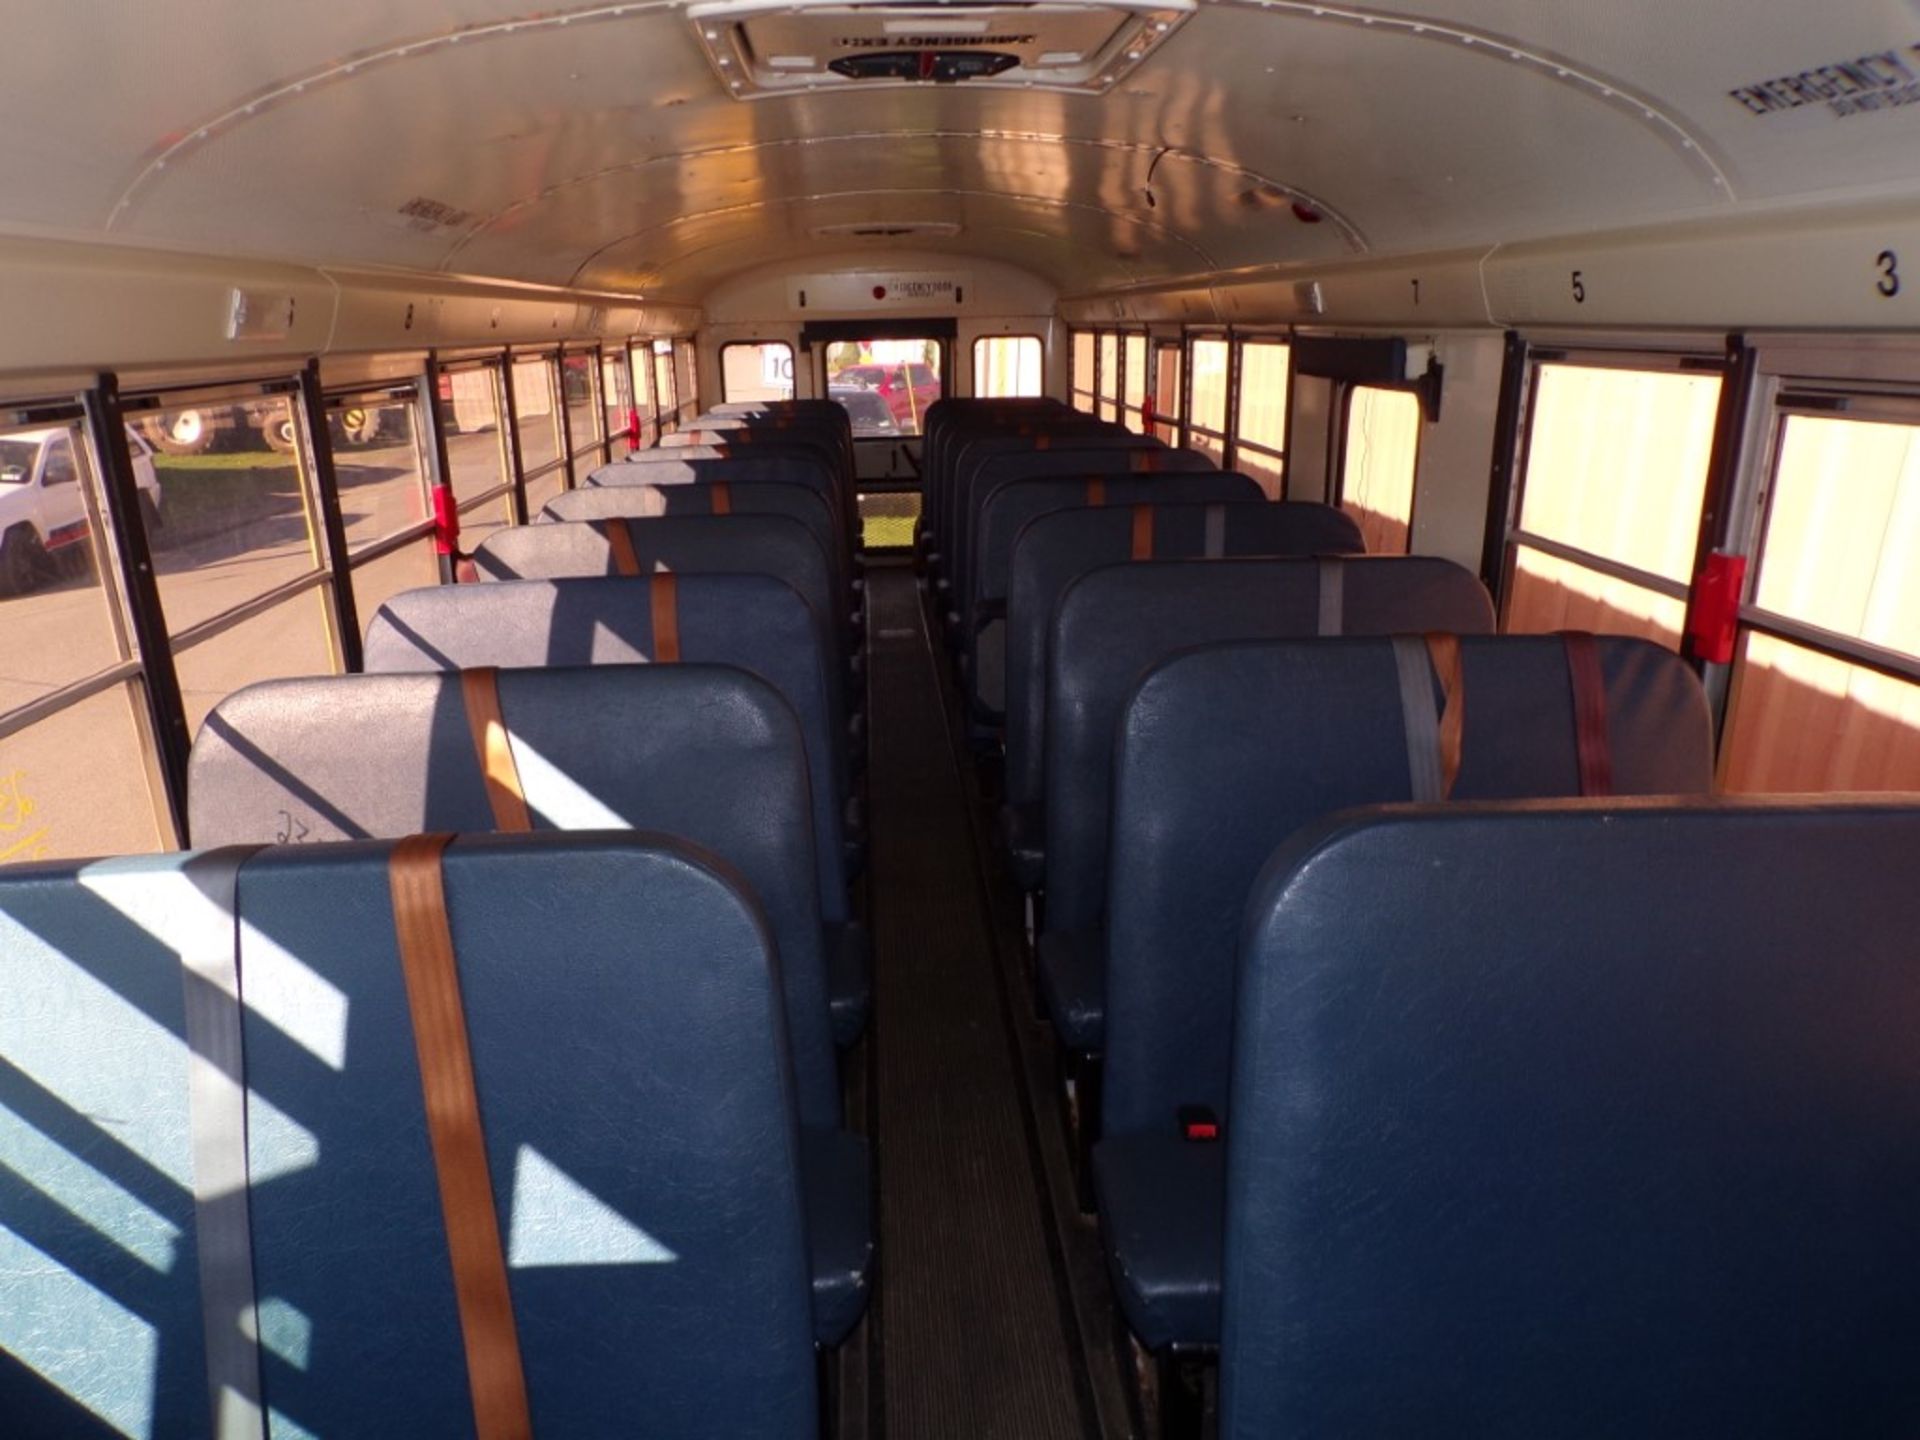 2014 International 66 Seat School Bus, Maxx Force Diesel, 165,315 Miles, # 265, Vin # - Image 6 of 7